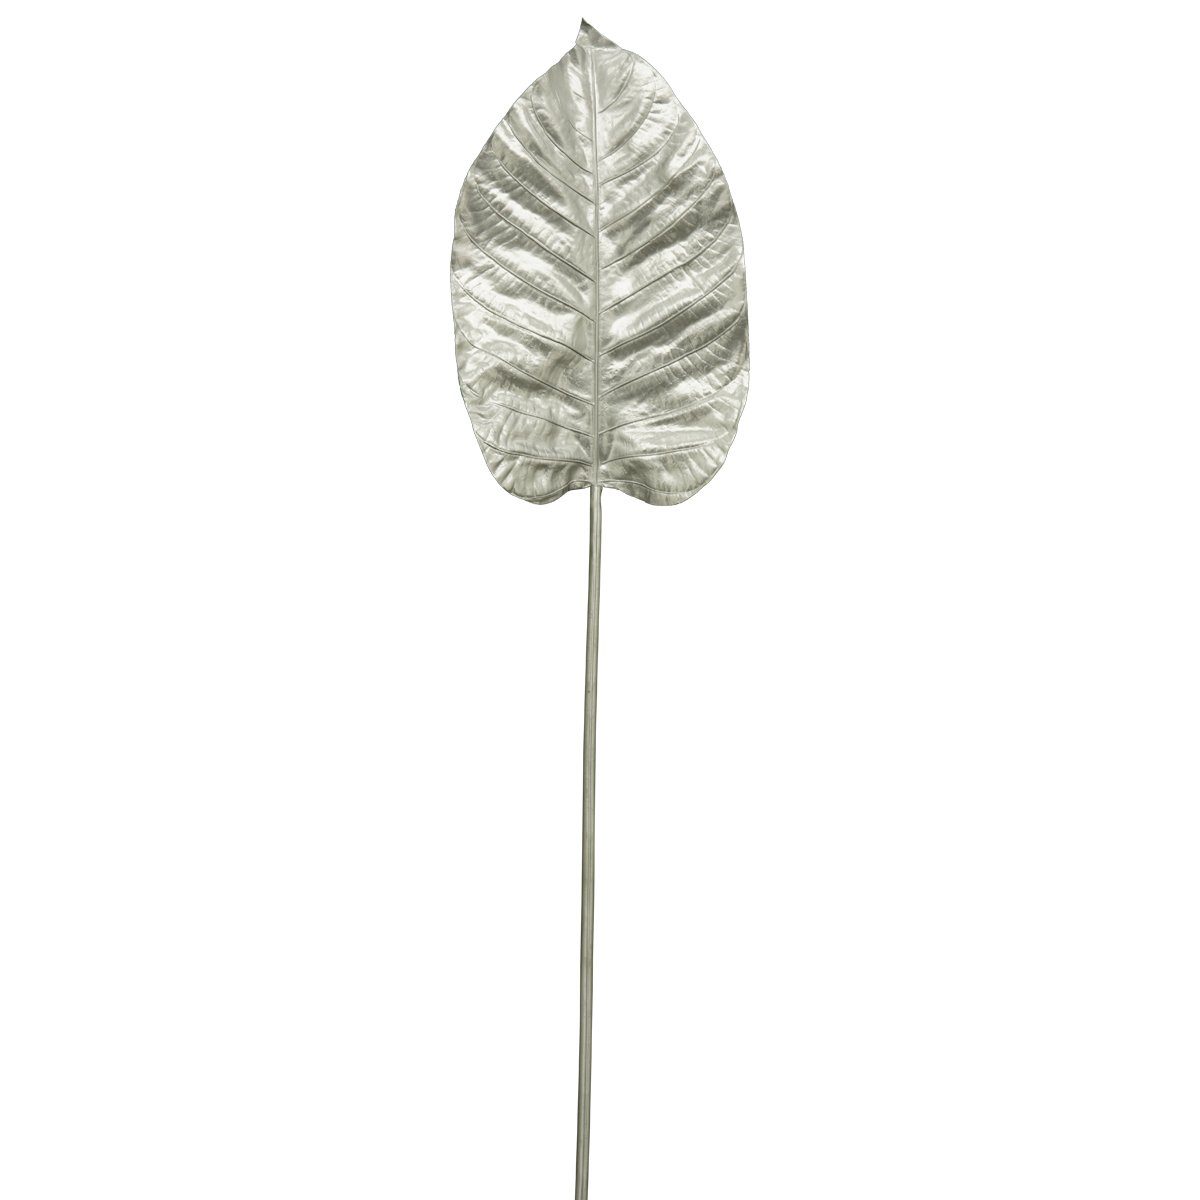 Kunstblume Schönes Deko Blatt am Stab in silber Weihnachtsdeko 100 cm Blatt, matches21 HOME & HOBBY, Höhe 100 cm